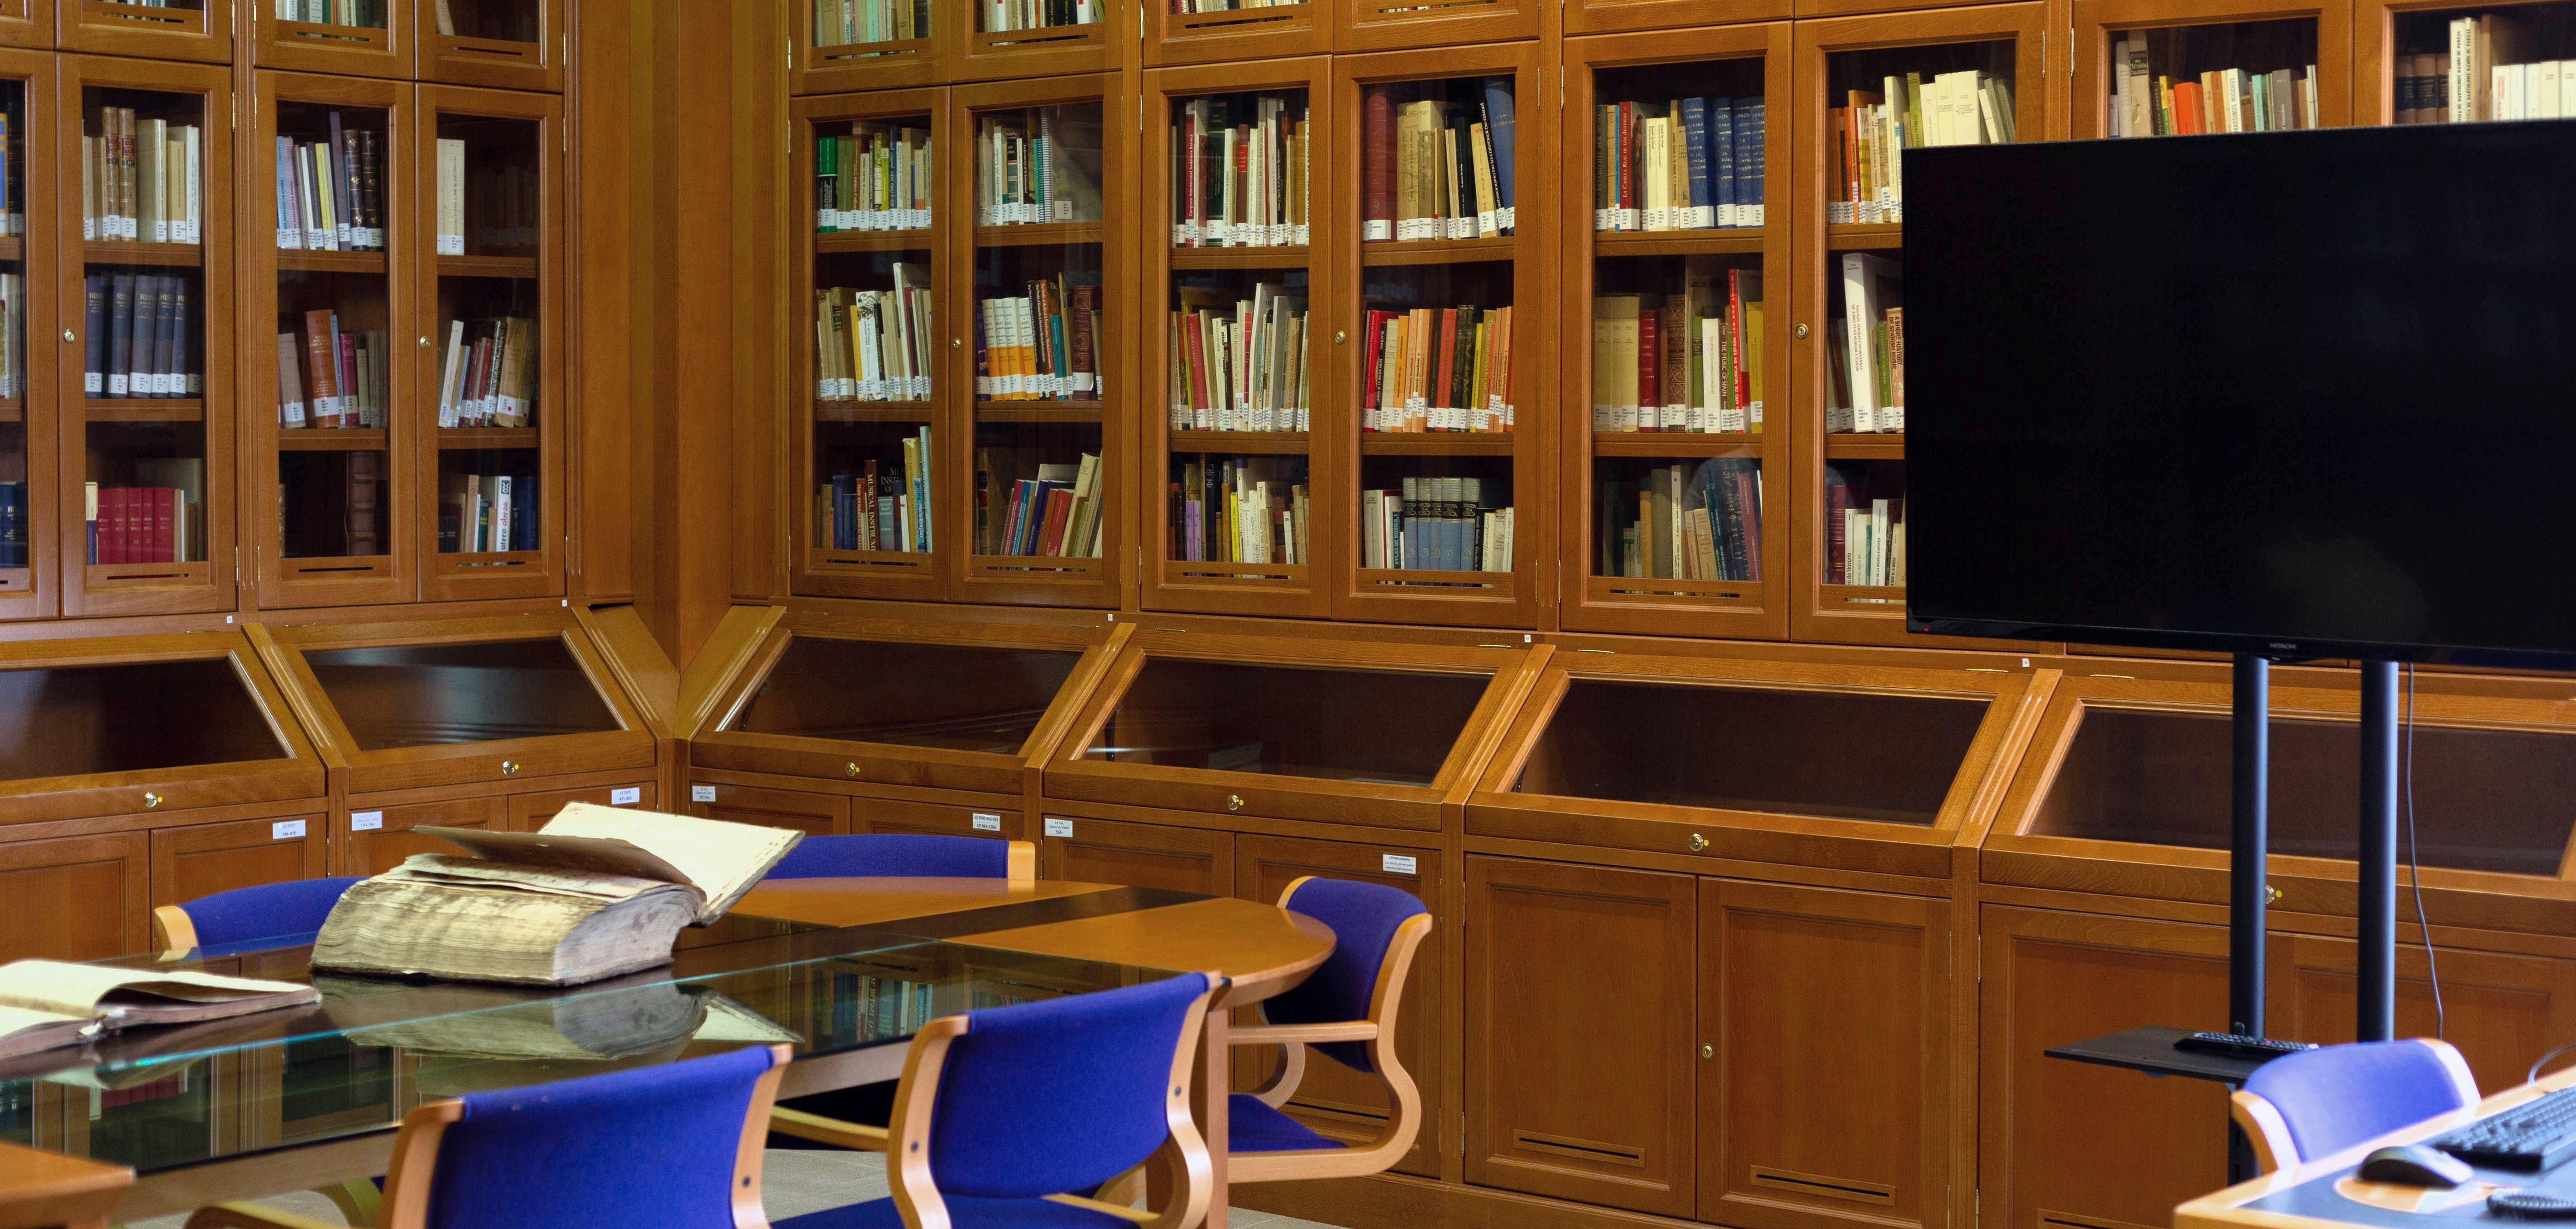 Instalaciones y equipamiento | Biblioteca ULPGC